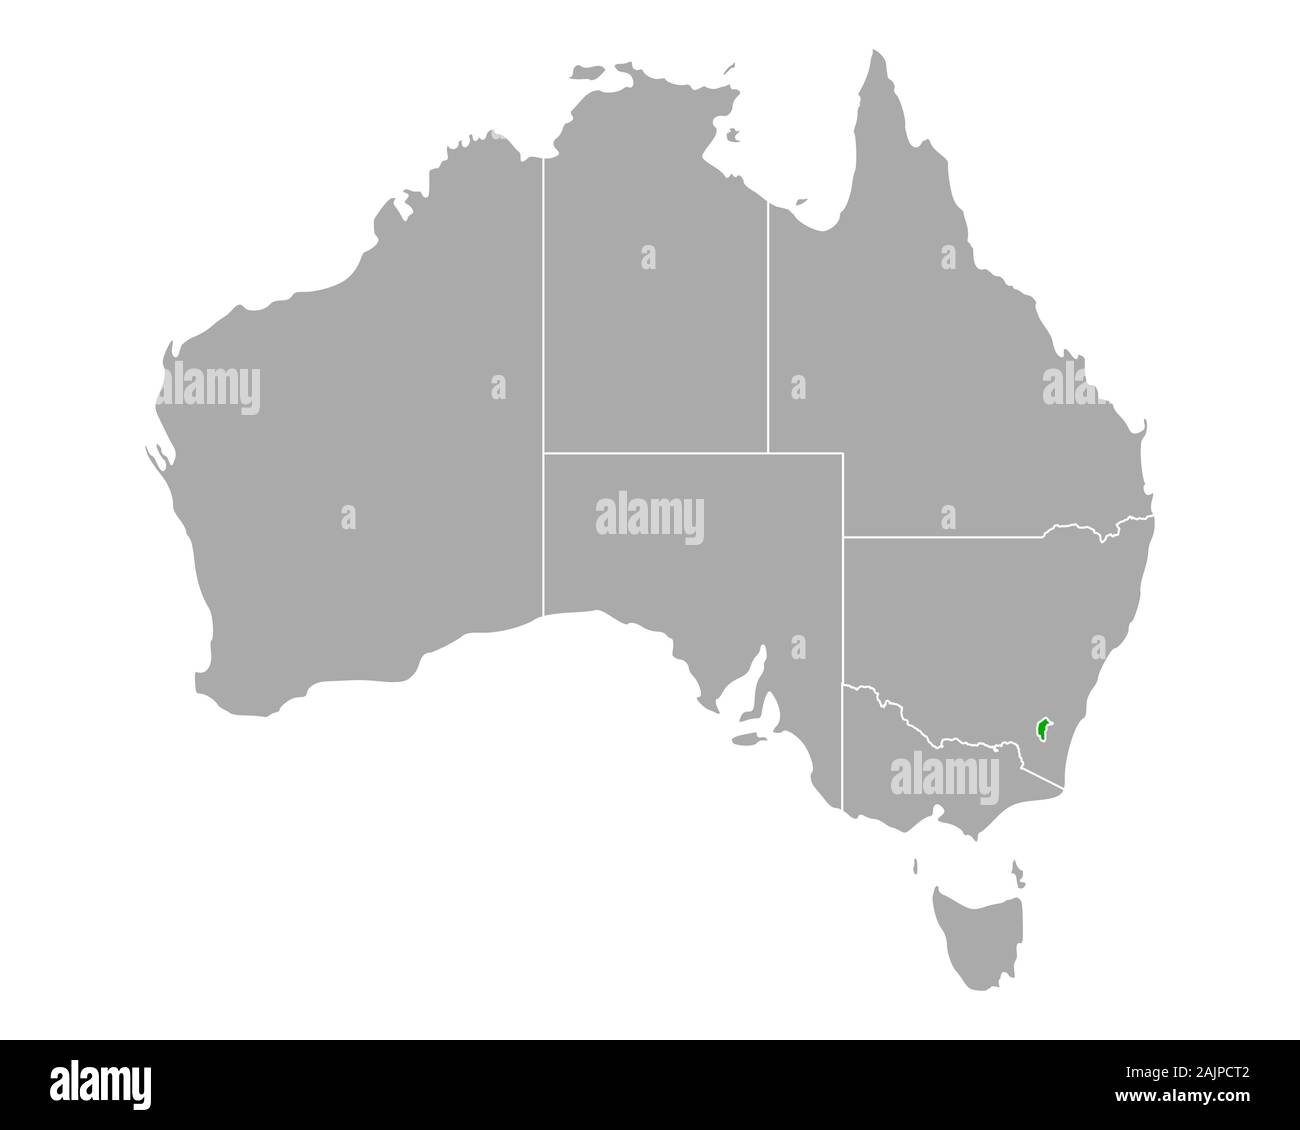 Plan de territoire de la capitale australienne en Australie Banque D'Images